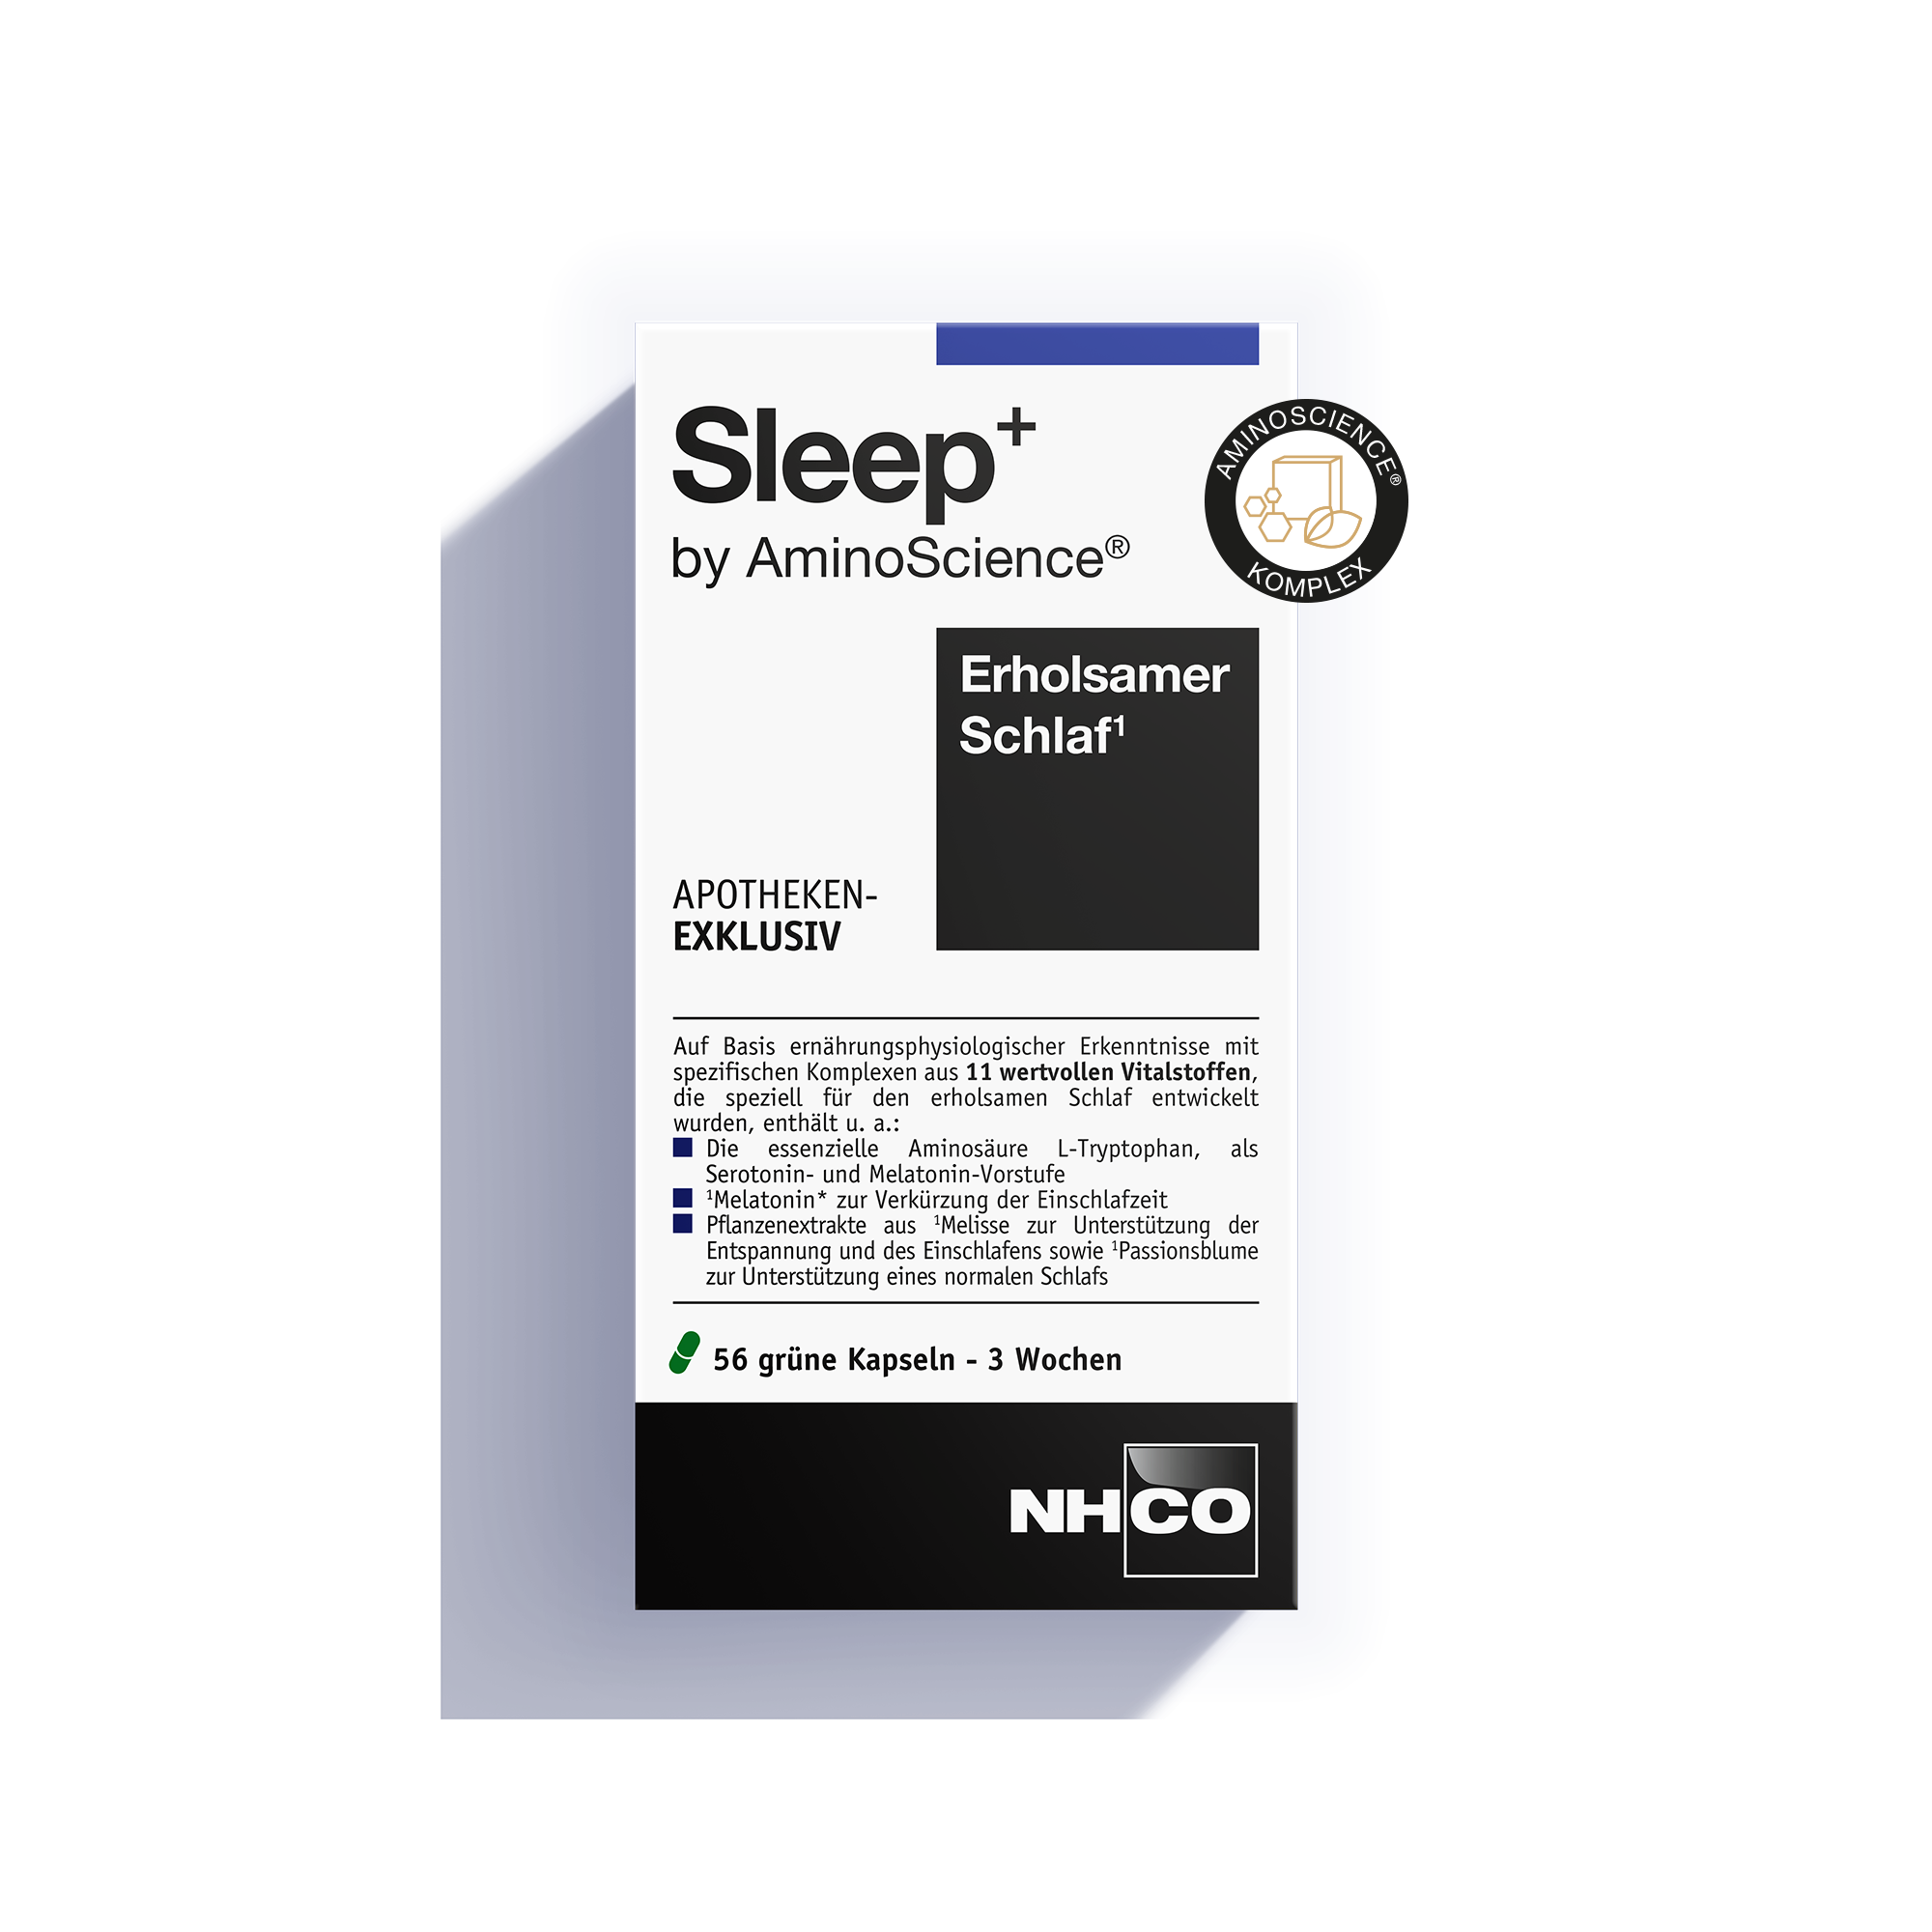 Verpackung von NHCO Nutrition Sleep+ mit AminoScience Komplex für besseren Schlaf.